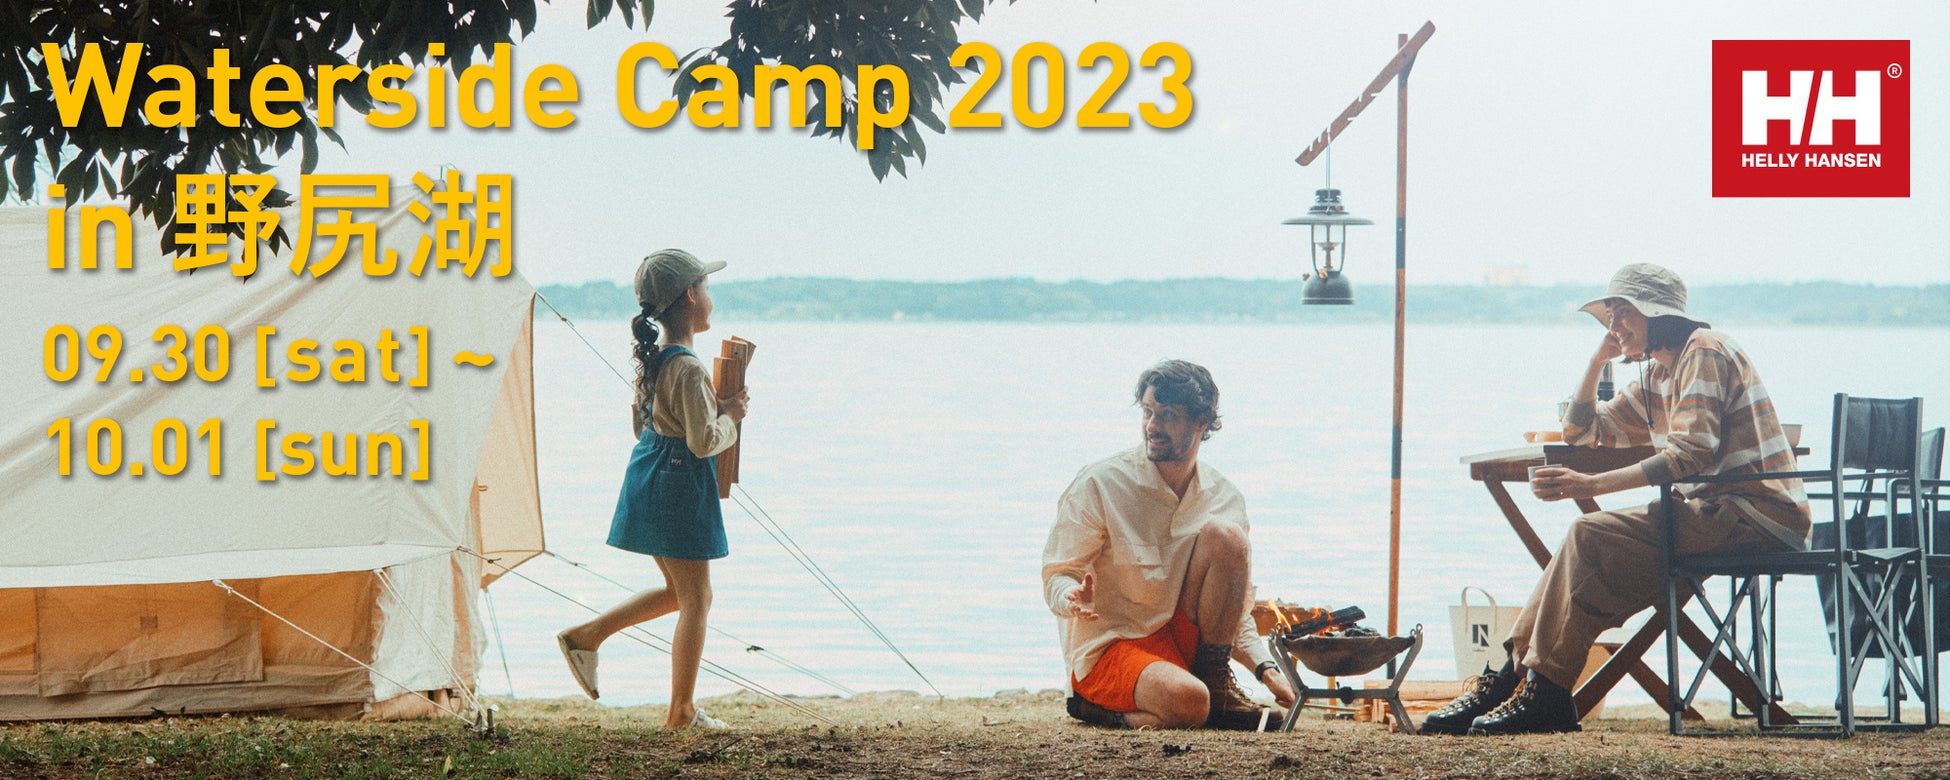 ヘリーハンセンが勧める、自然を感じる水辺のキャンプ。 「HELLY HANSEN Waterside Camp in 野尻湖を開催」- 7月10日(月)より募集開始 -のサブ画像1